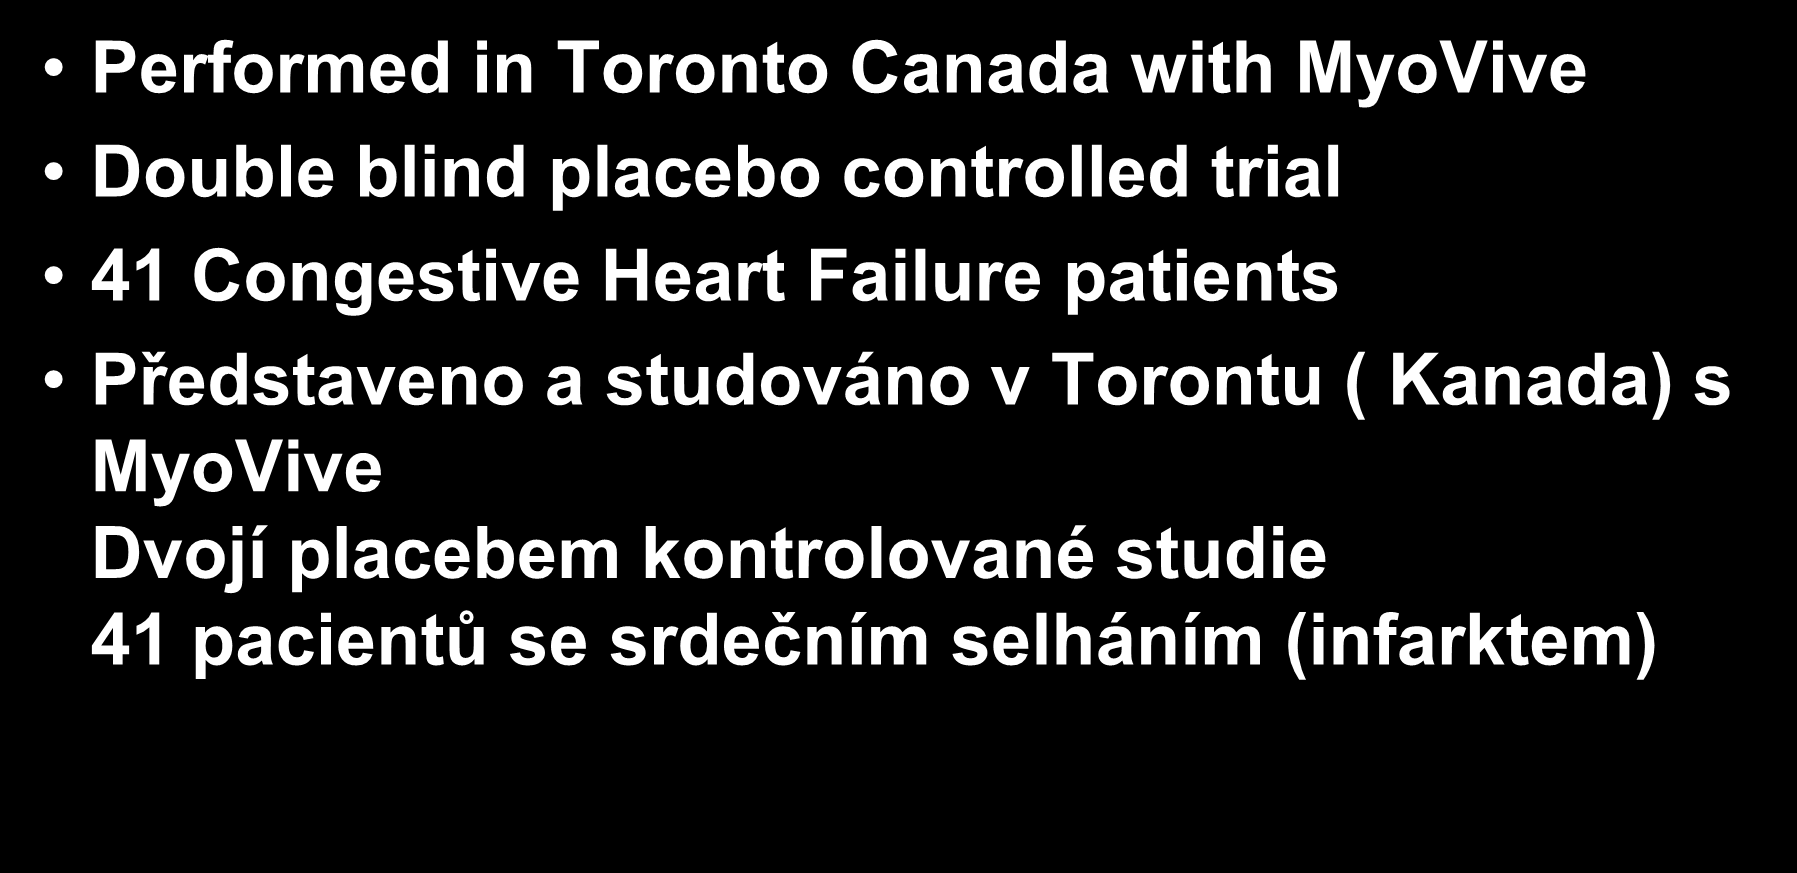 patients Představeno a studováno v Torontu ( Kanada) s MyoVive Dvojí